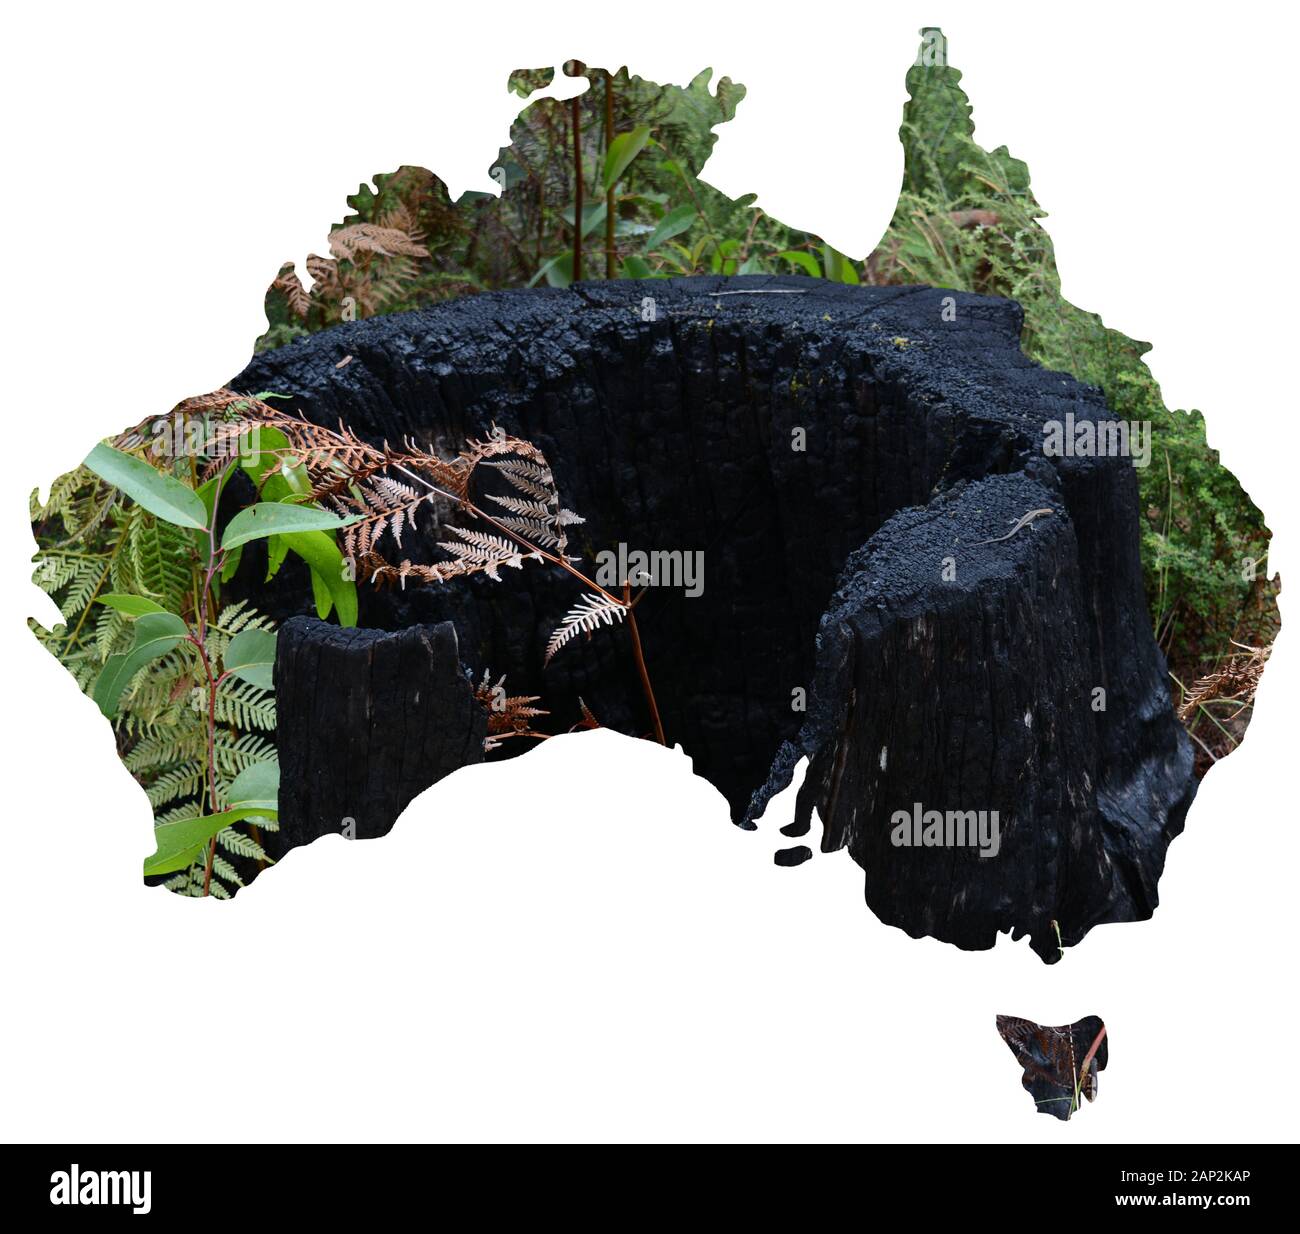 Une série de vues de paysages naturels et les paysages de l'Australie de mettre en une carte du pays Banque D'Images